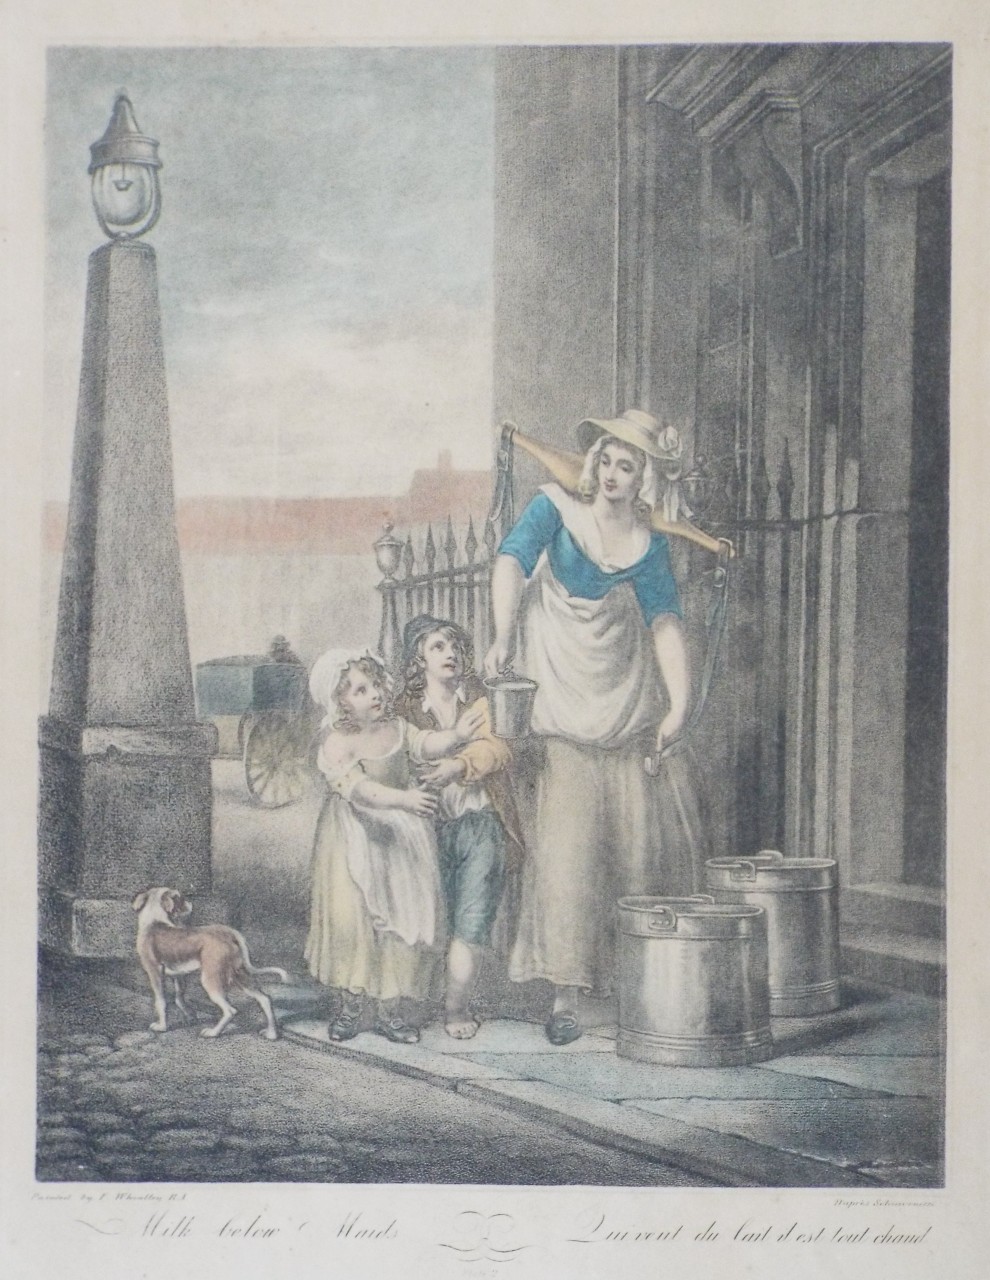 Lithograph - Cries of London Plate 2: Milk below Maids. 
Qui vent du lait il est tout chaud. - Schiavonetti